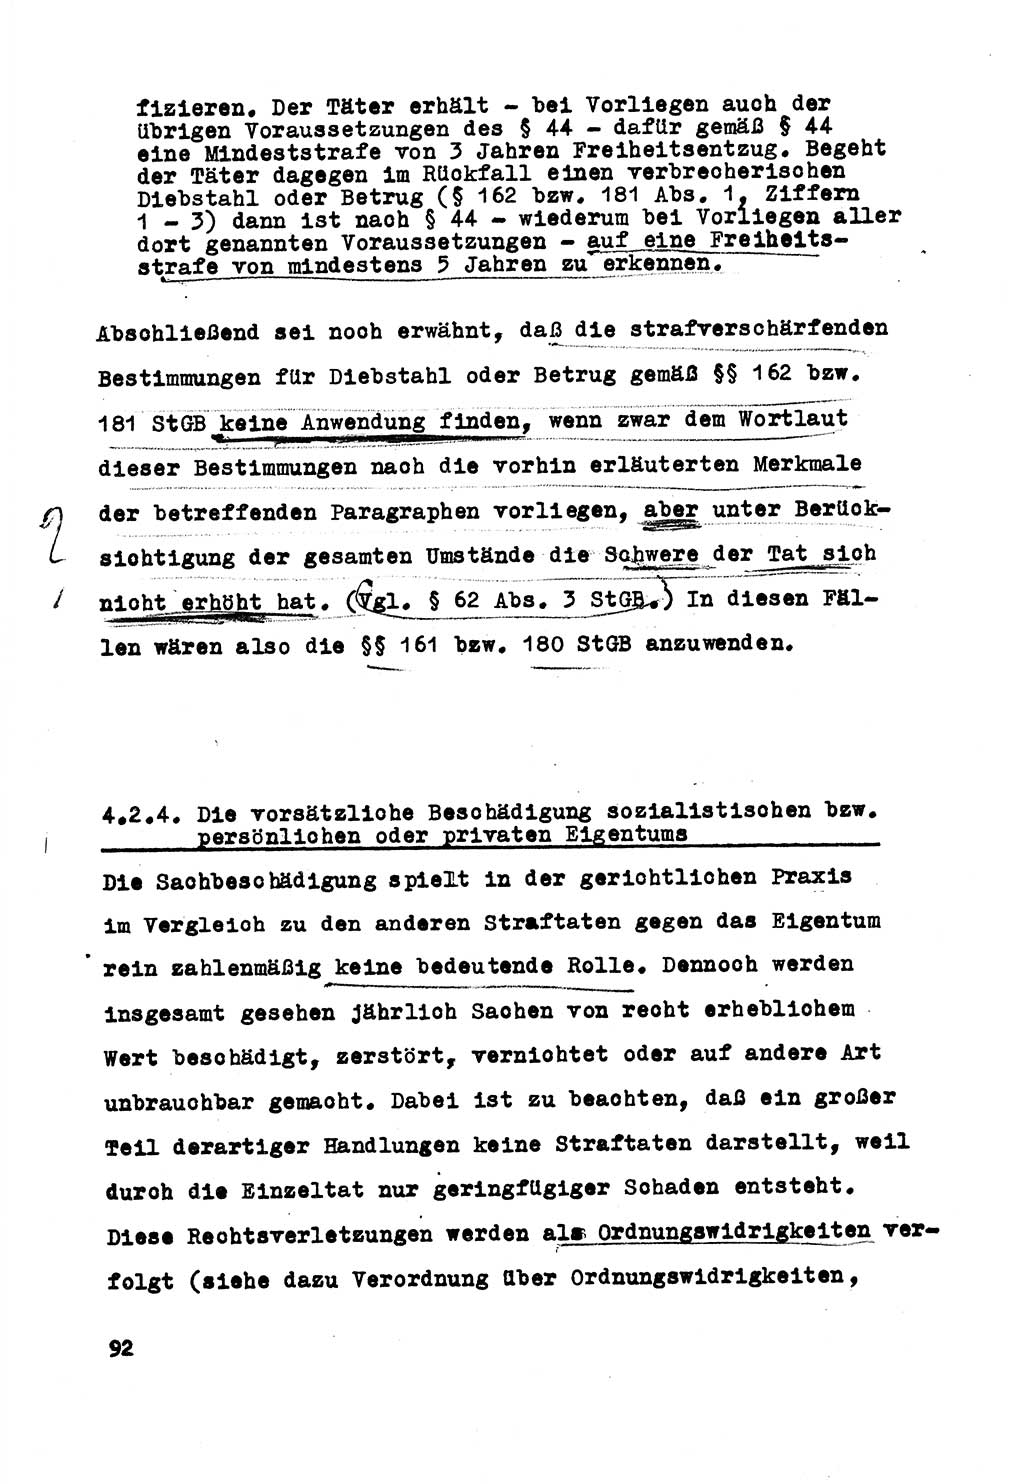 Strafrecht der DDR (Deutsche Demokratische Republik), Besonderer Teil, Lehrmaterial, Heft 5 1970, Seite 92 (Strafr. DDR BT Lehrmat. H. 5 1970, S. 92)